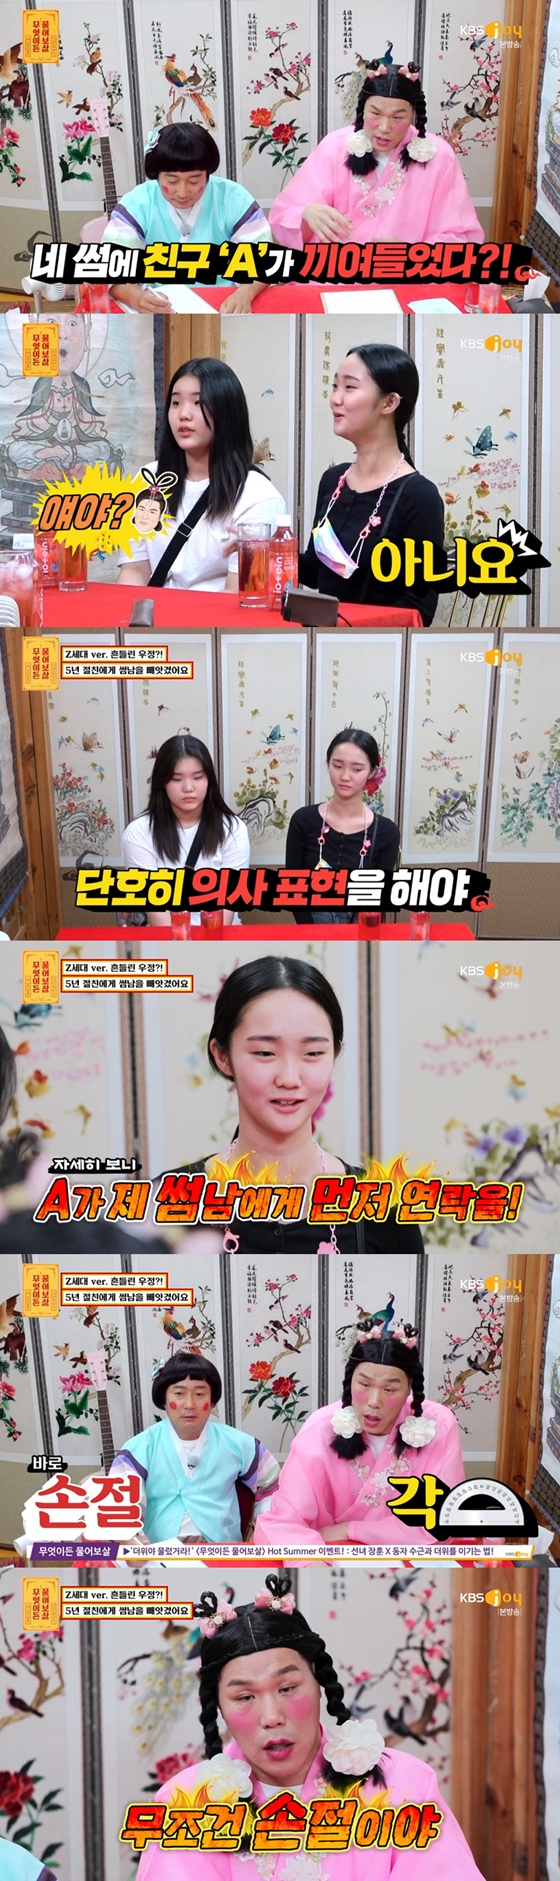 서장훈이 KBS Joy '무엇이든 물어보살'에서 여중생 고민을 해결했다./사진=KBS Joy '무엇이든 물어보살' 방송 화면 캡처